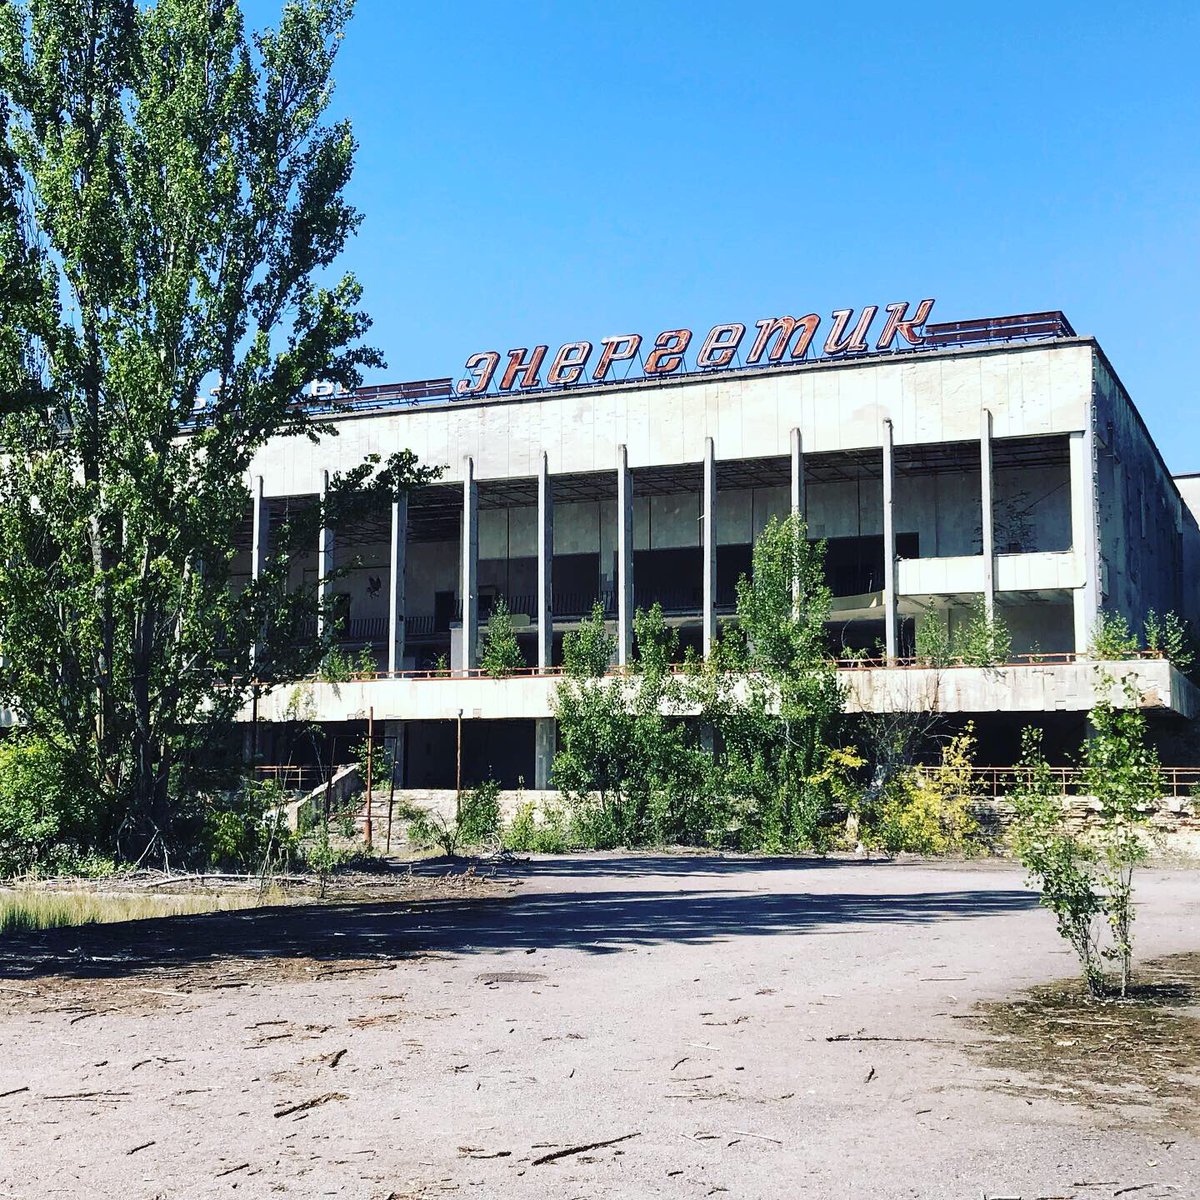 nous nous dirigeons ensuite vers la place centrale où se trouve un théâtre, un restaurant, un centre commercial, et notamment un hôtel.  #Tchernobyl  (Plus de photos:  http://Instagram.com/nashtagstagram )